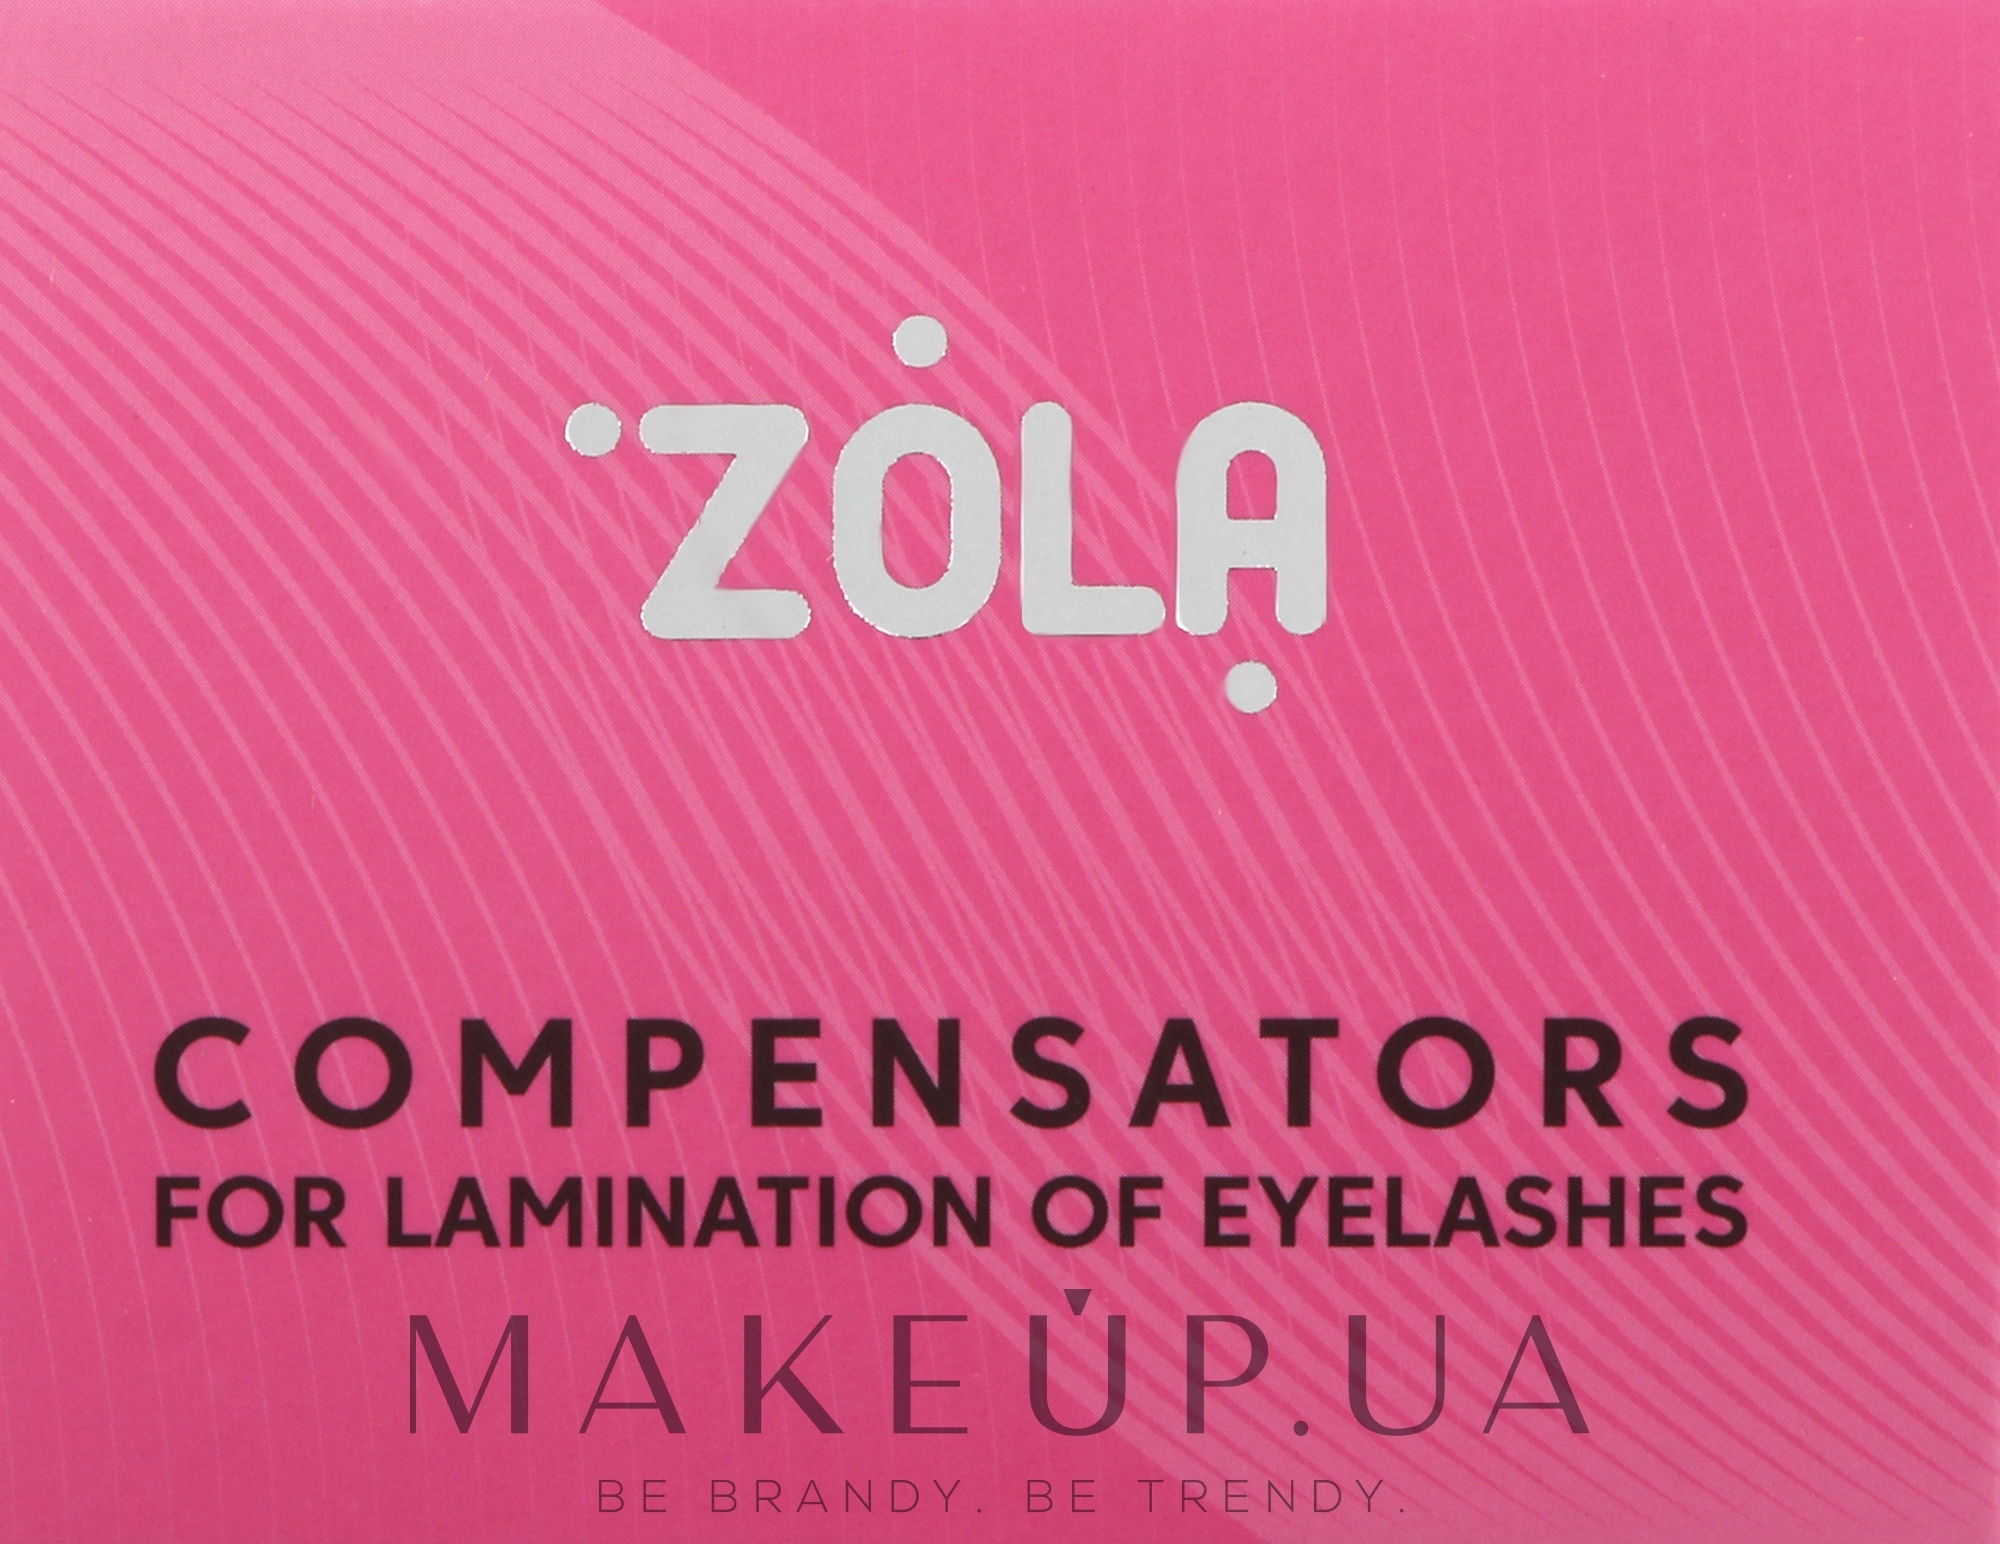 Компенсаторы для ламинирования ресниц, розовые - Zola Compensators For Lamination Of Eyelashes — фото 2шт